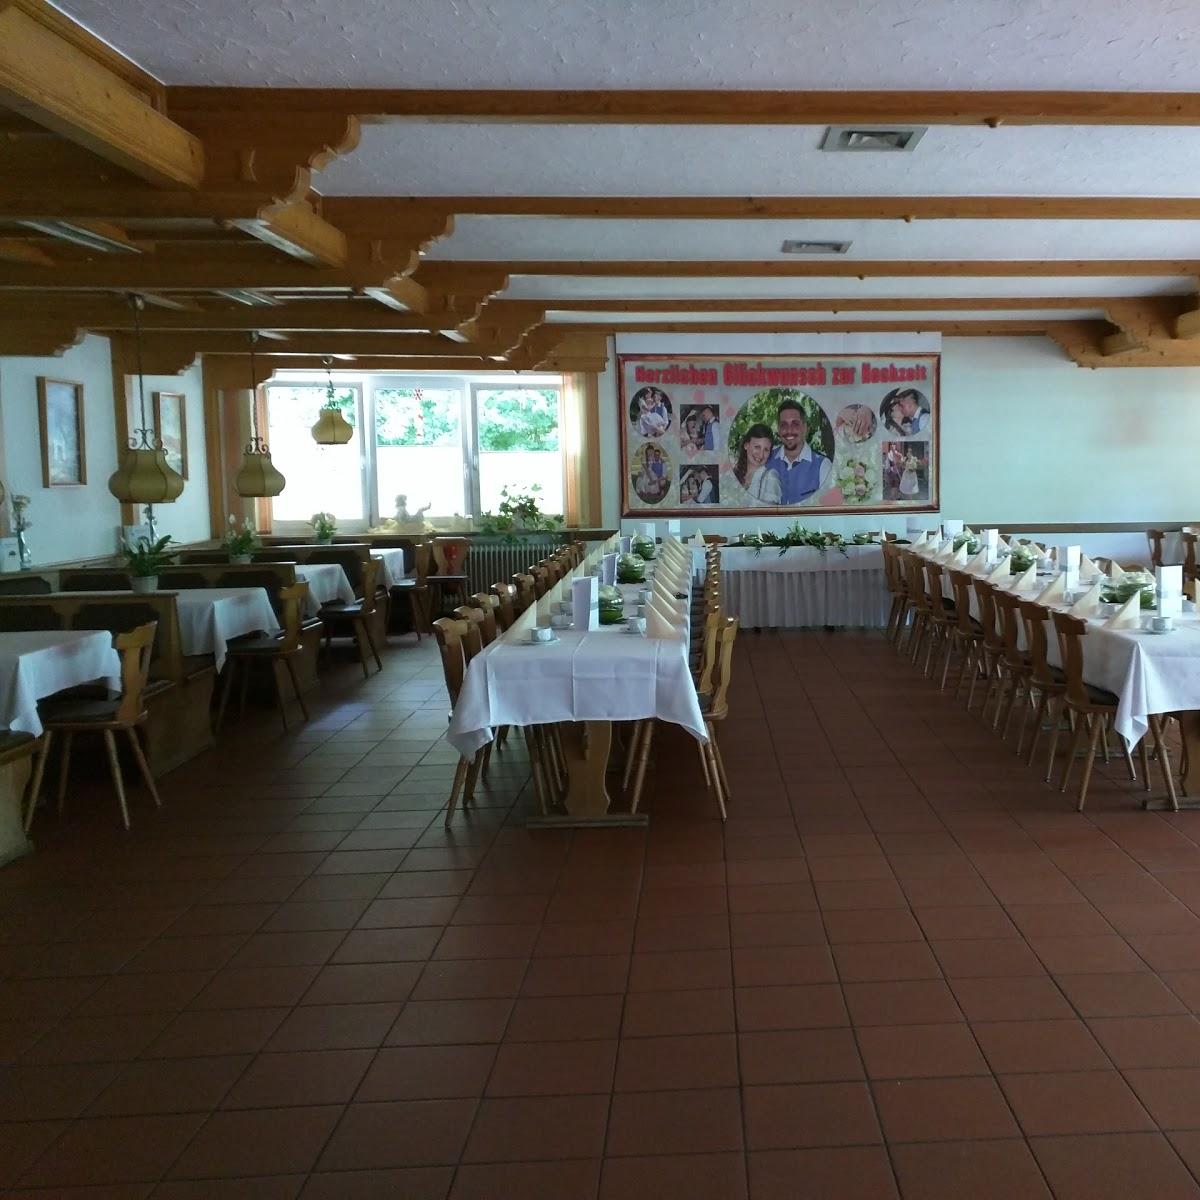 Restaurant "Hotel-Gasthof am Schloß" in  Pilsach